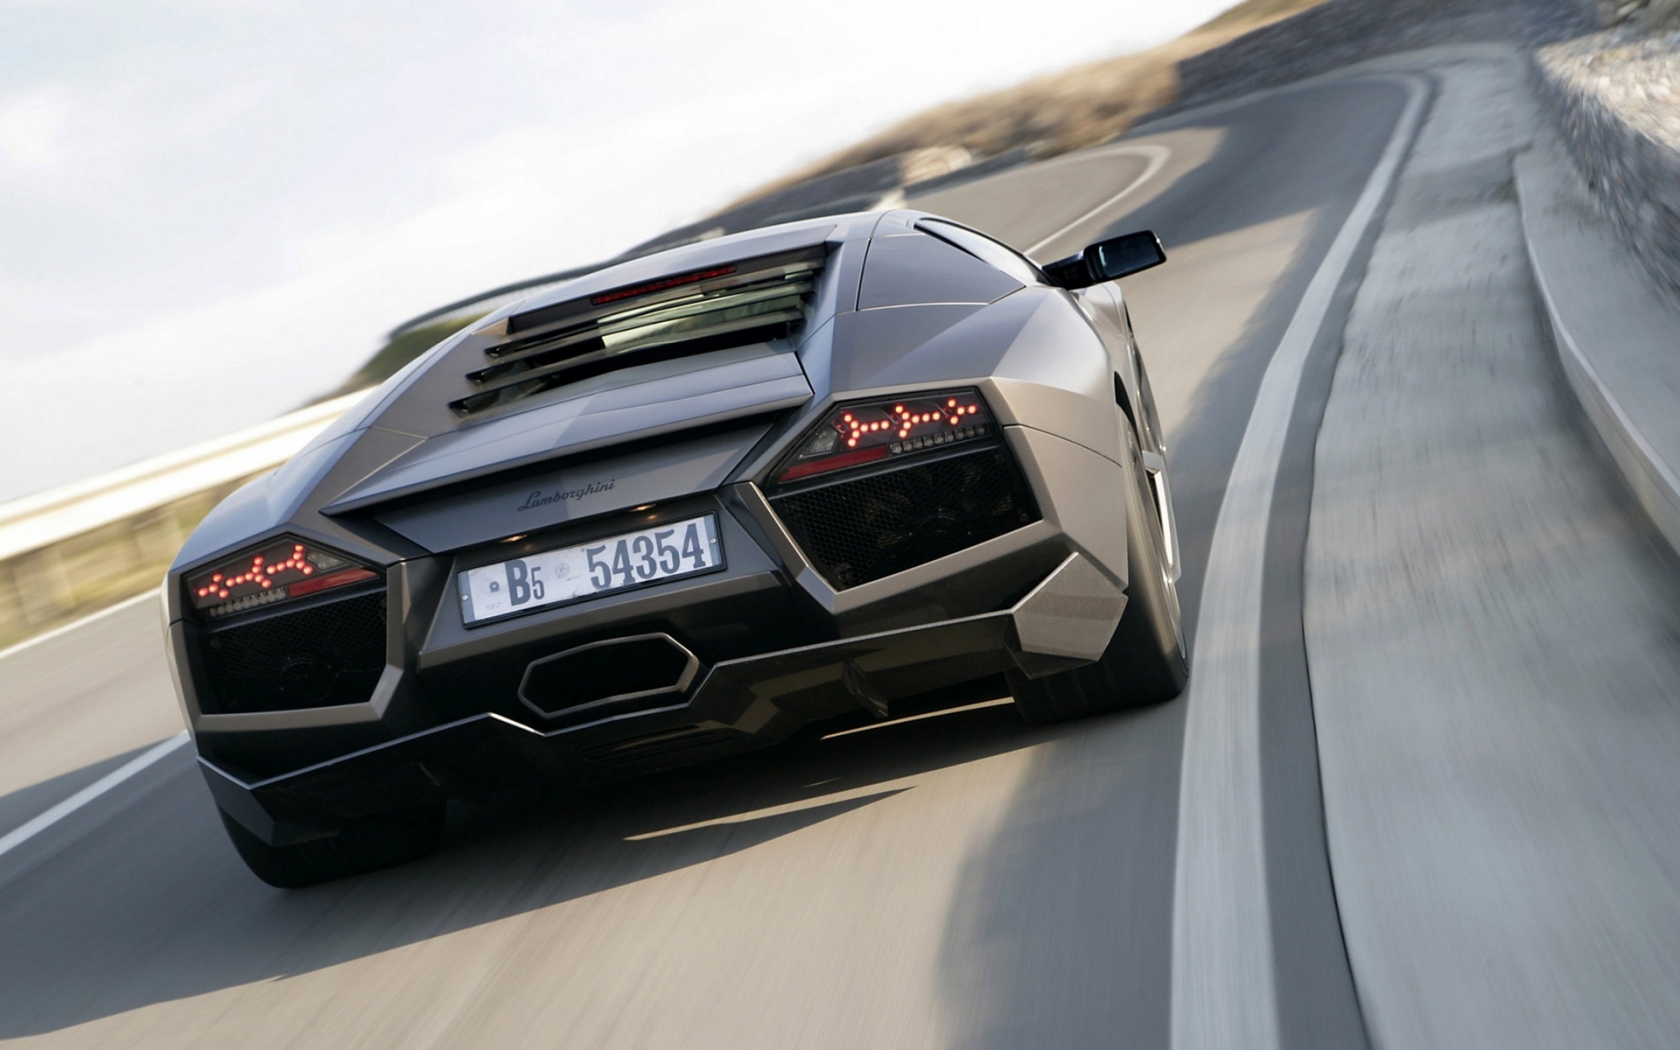 Lamborghini Reventon Back for 1680 x 1050 widescreen resolution